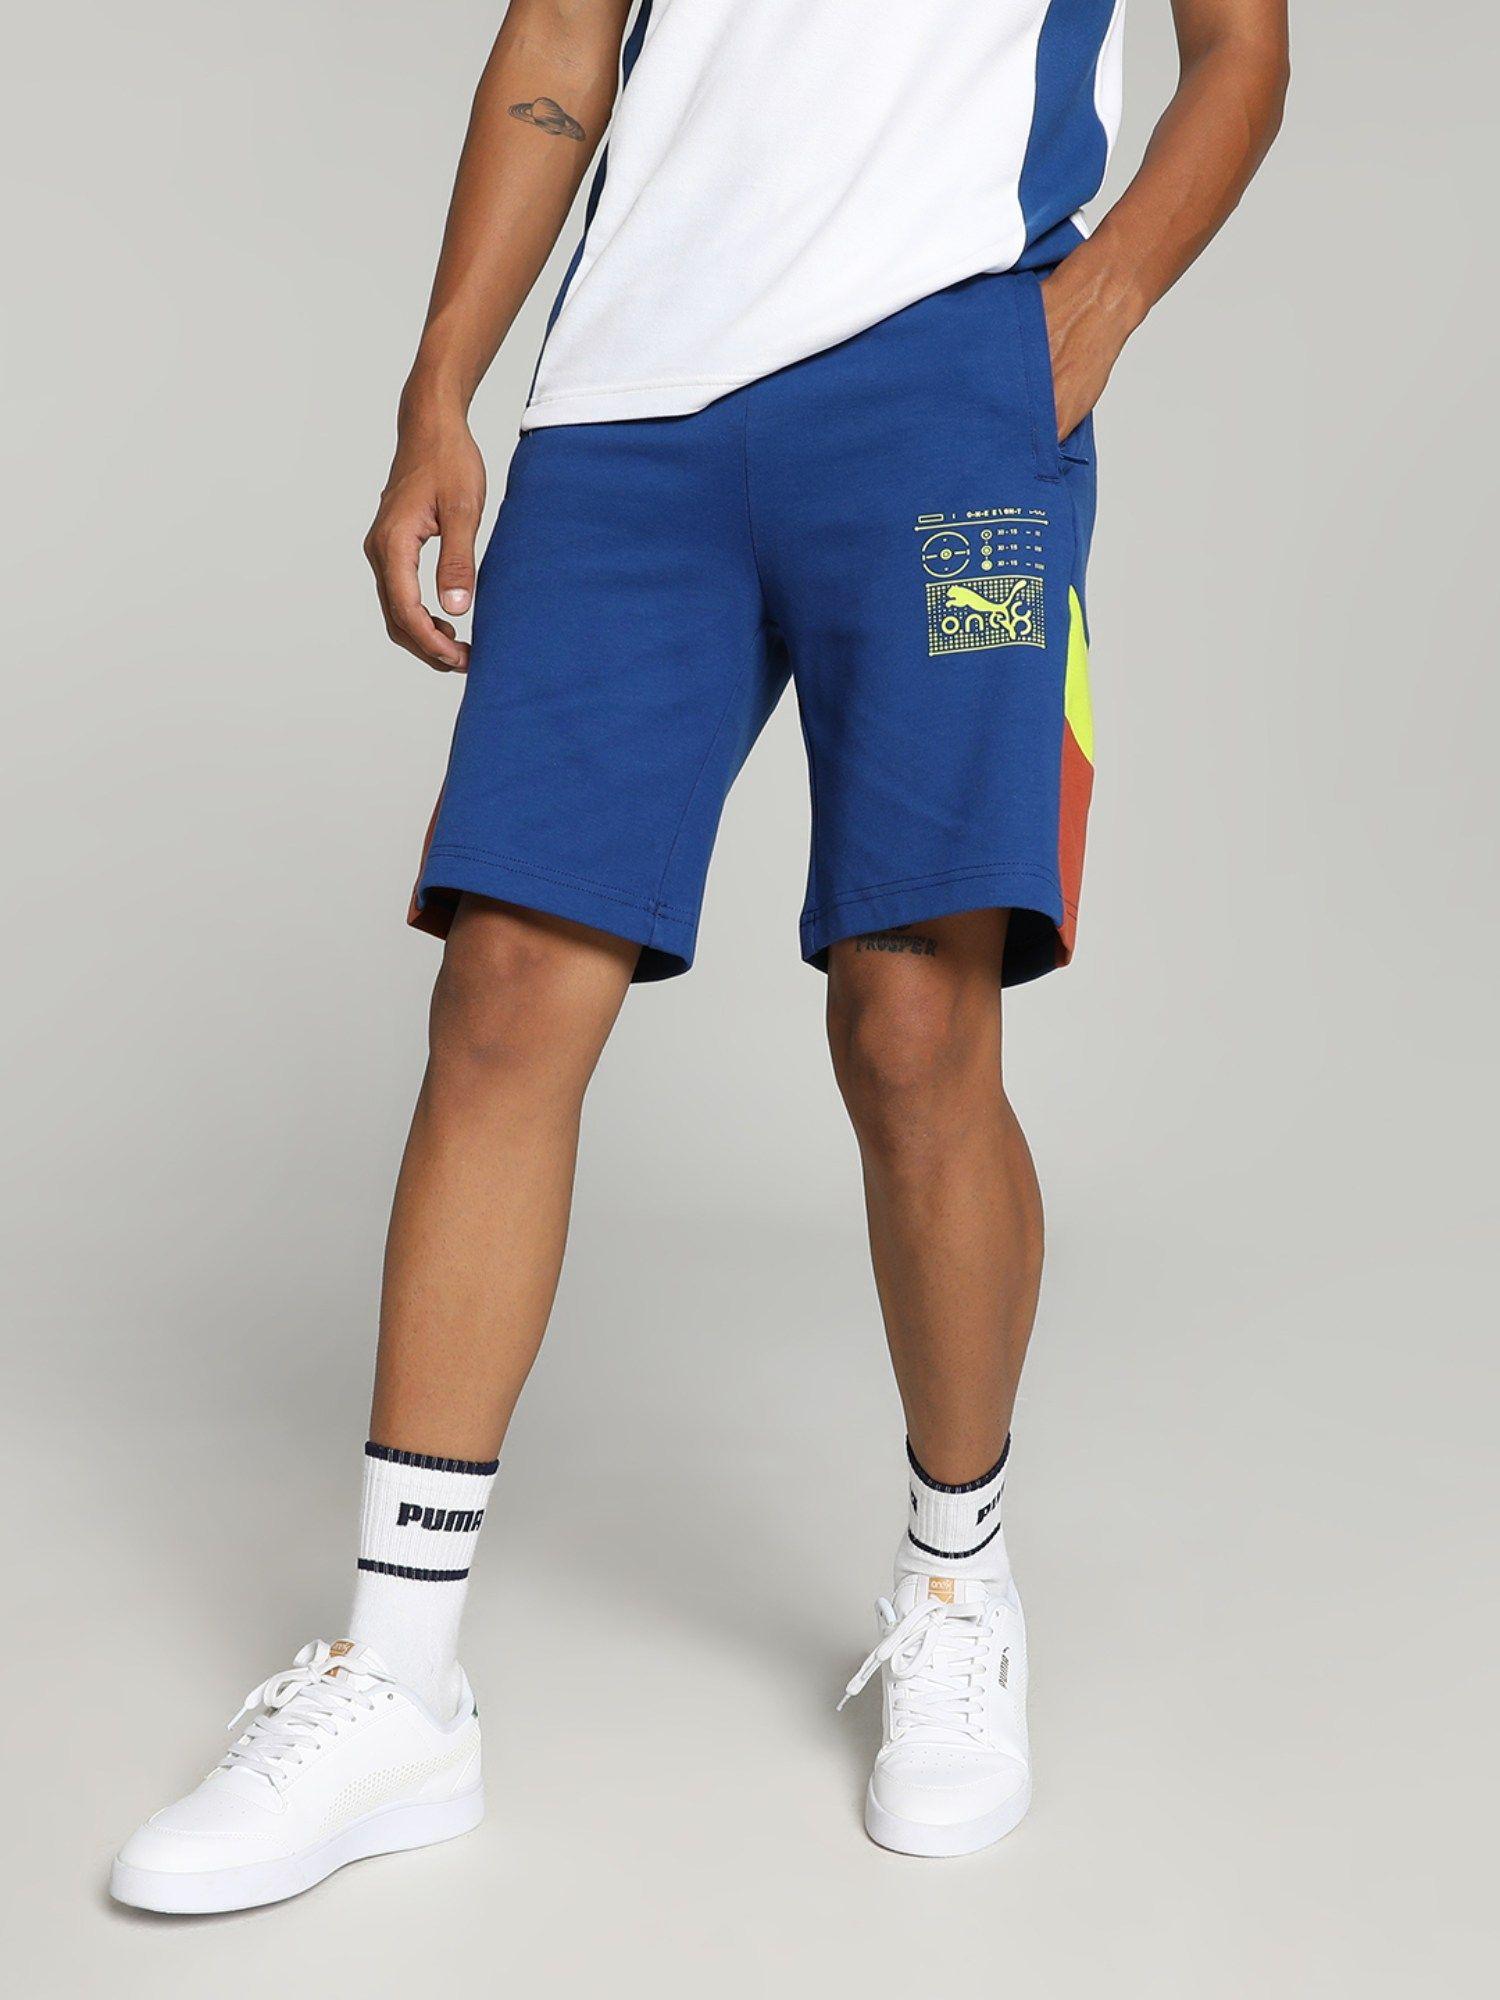 xone8-elevated-men-blue-shorts